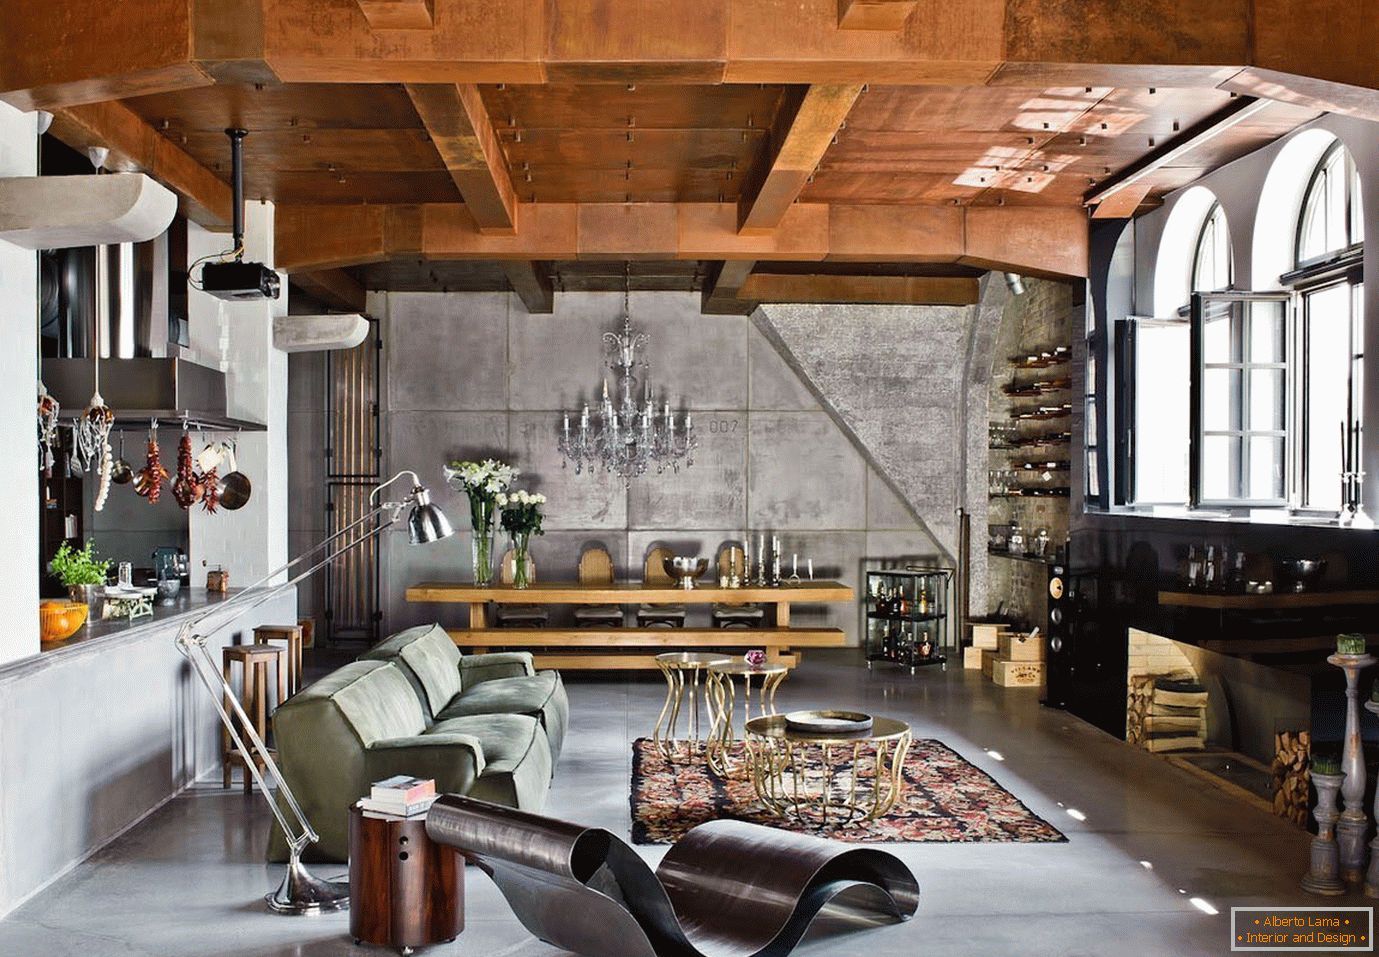 soffitto с балками в интерьере в индустриальном стиле